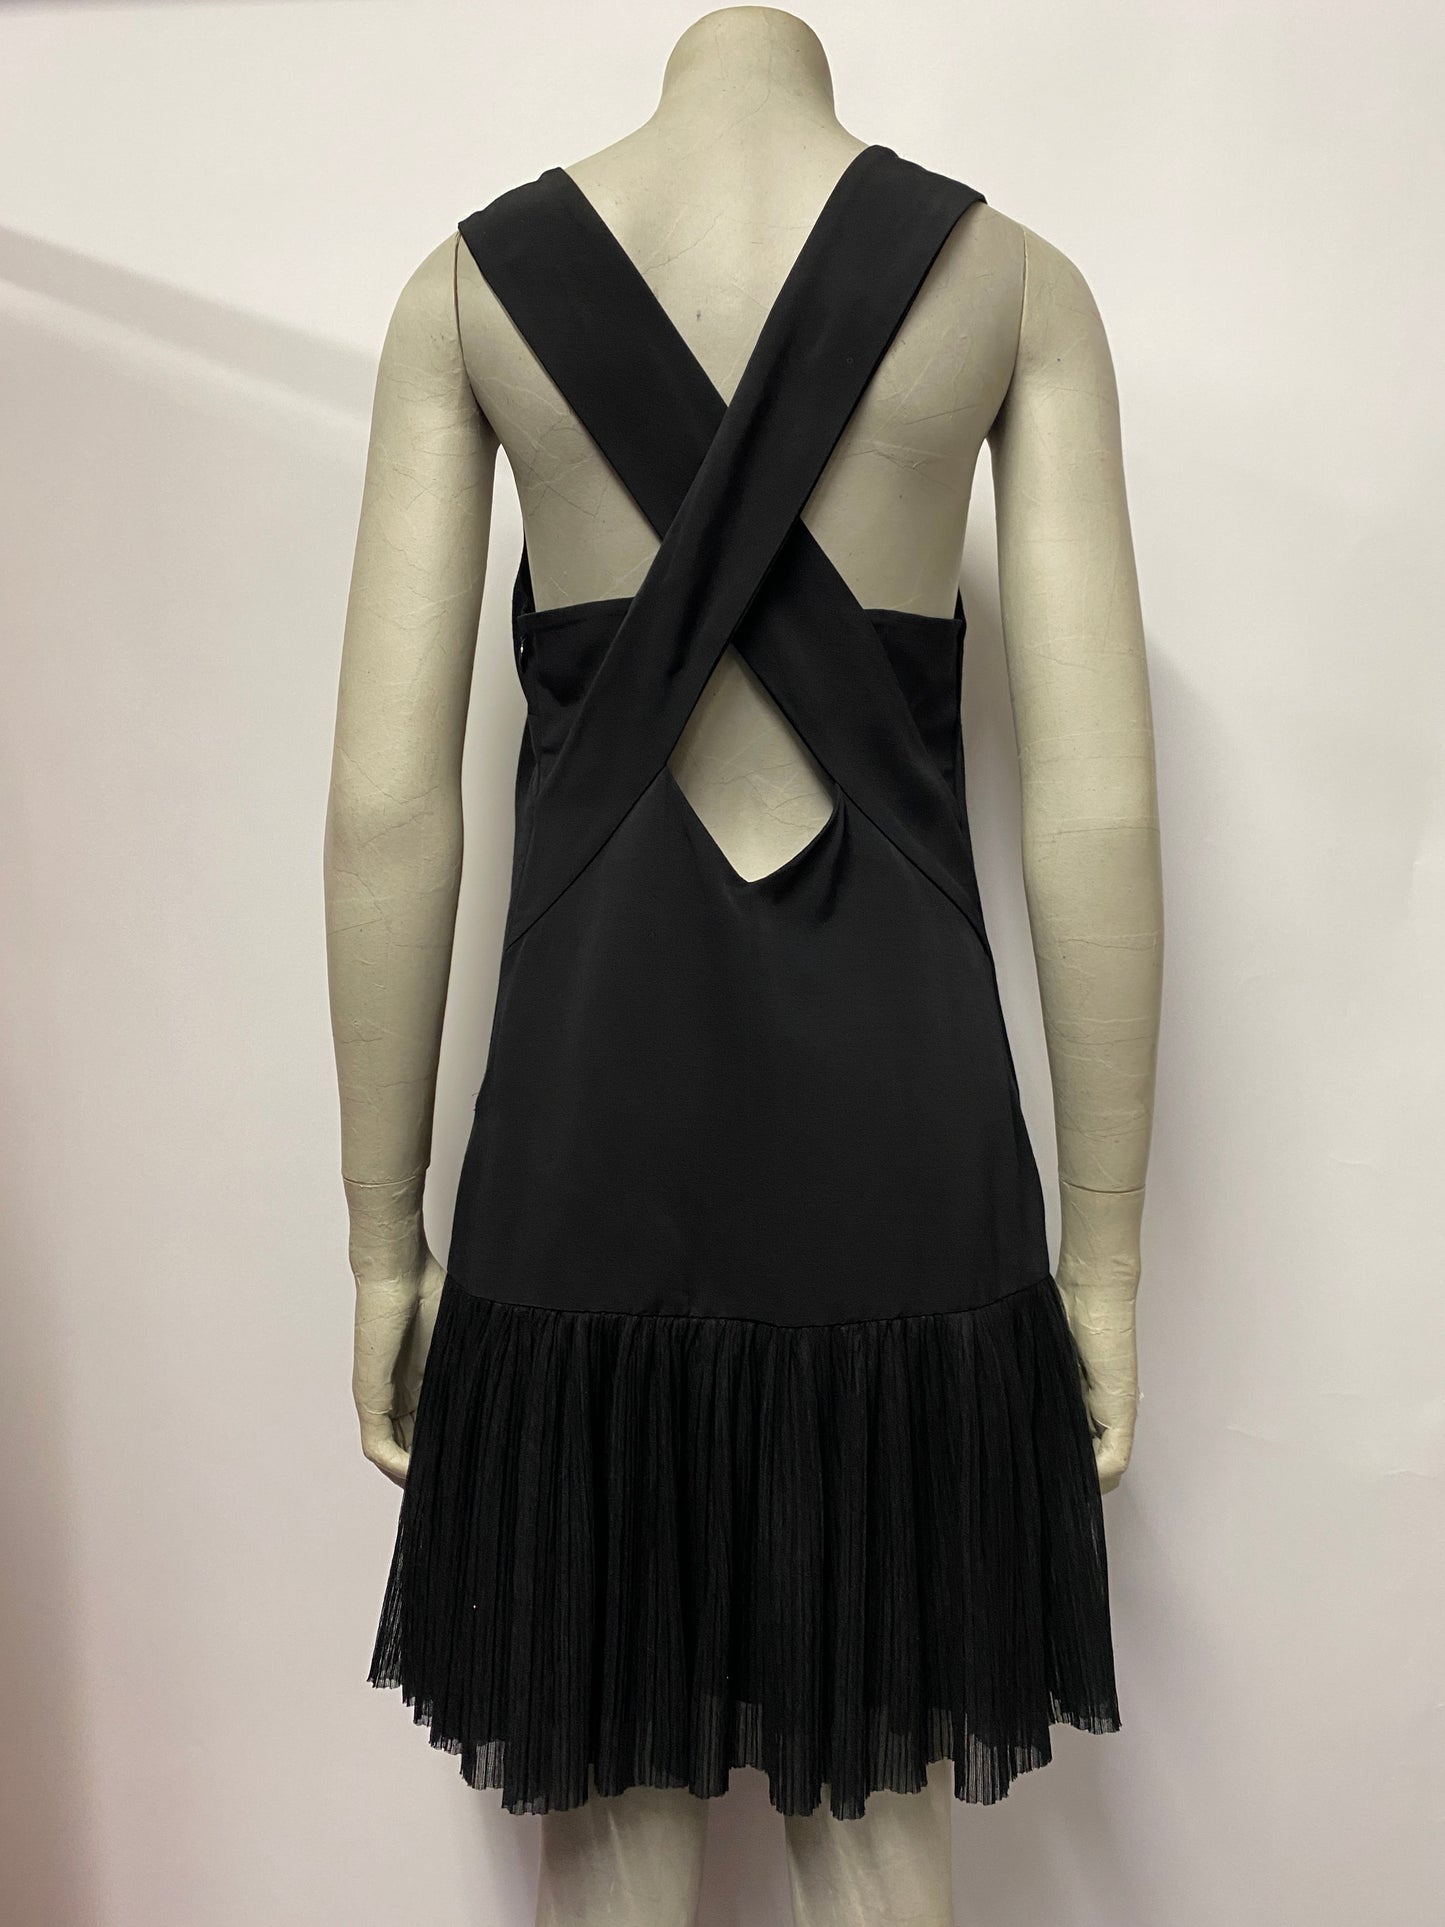 Sandro Paris Black Sleeveless Mini Dress 10